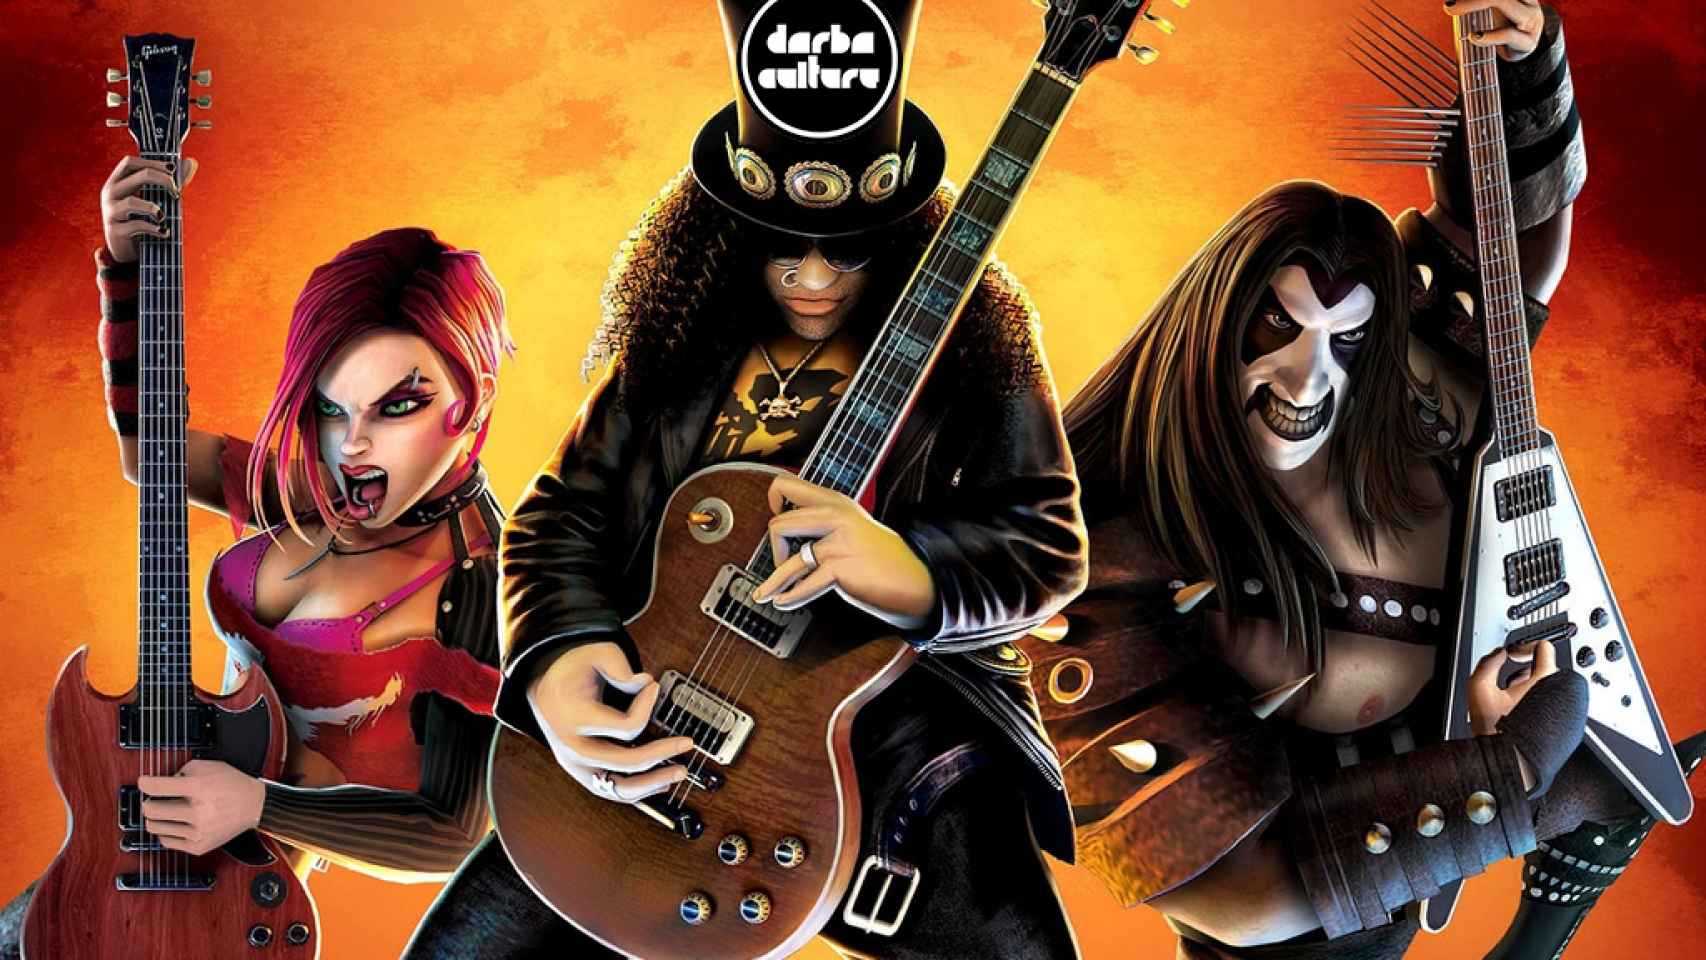 El 'Guitar Hero III: Legends of Rock' fue la tercera entrega del videojuego